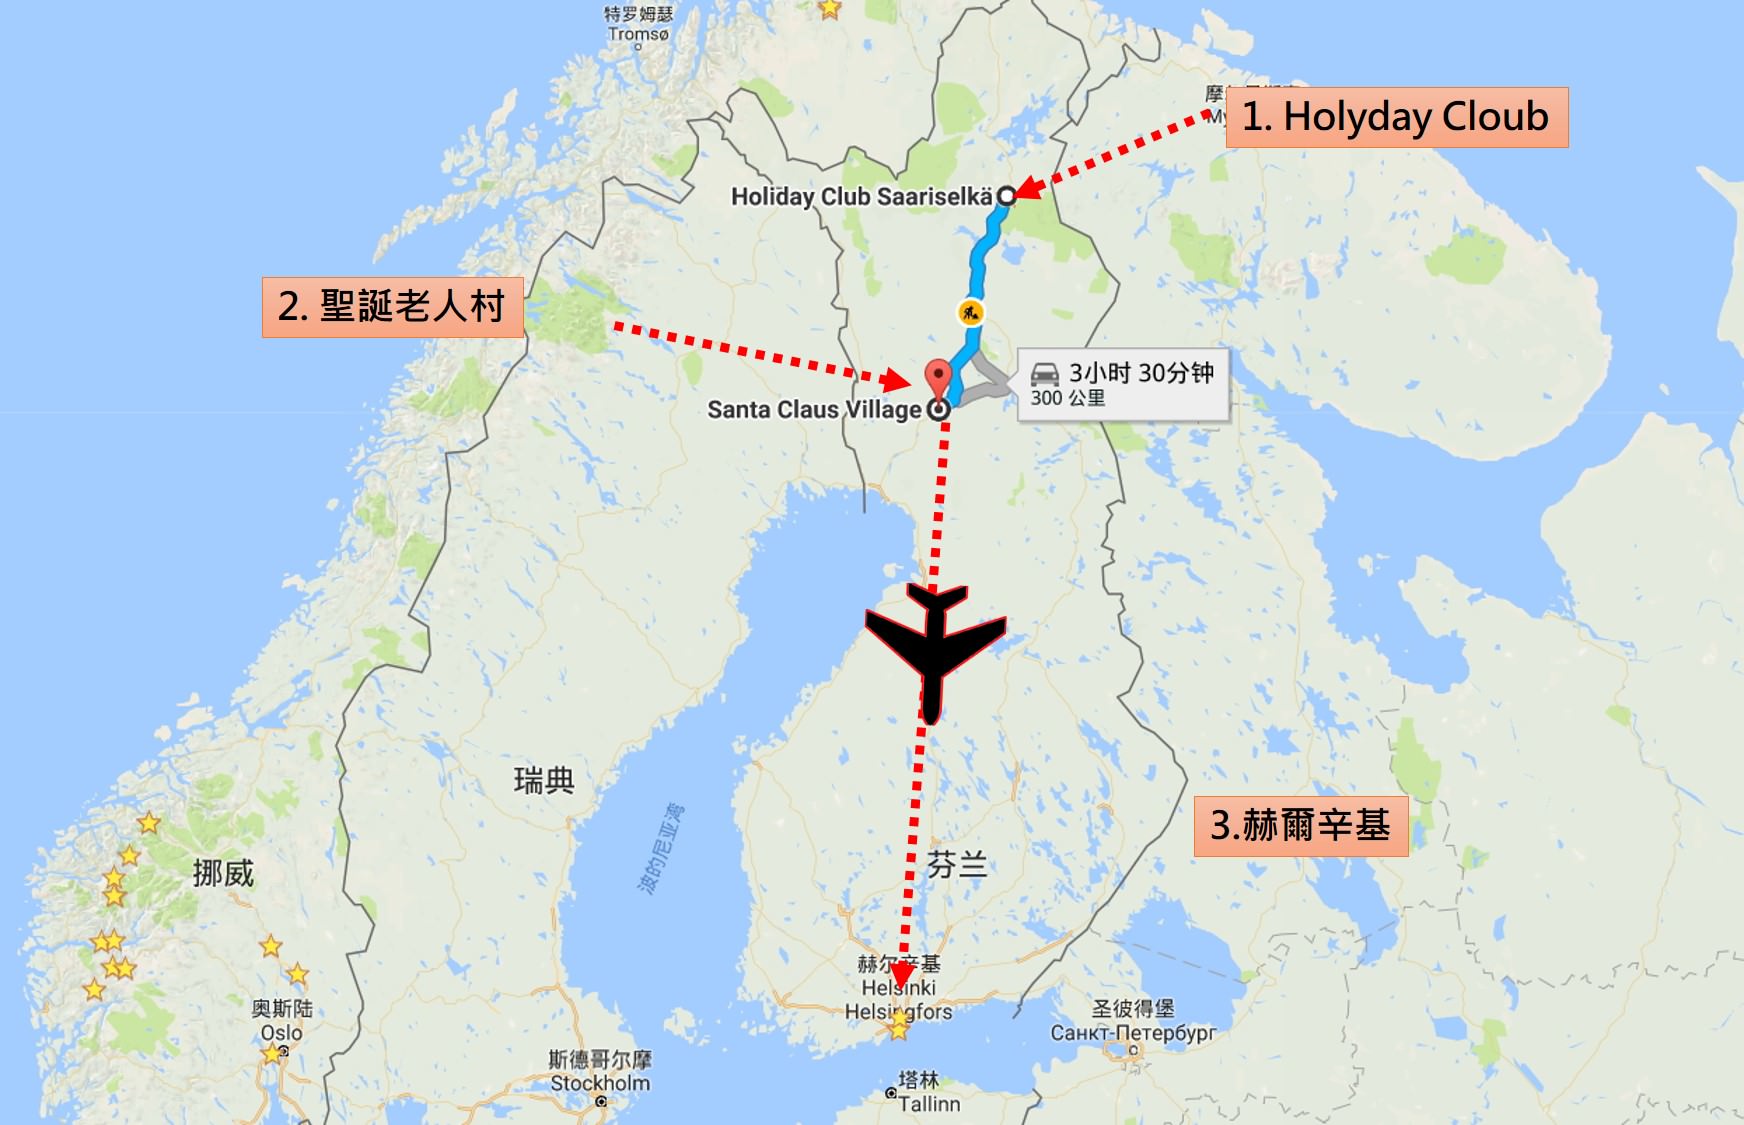 [巨大旅遊] 北歐五國 17 日旅程第 05 日 – 極圈博物館、聖誕老人村、赫爾辛基